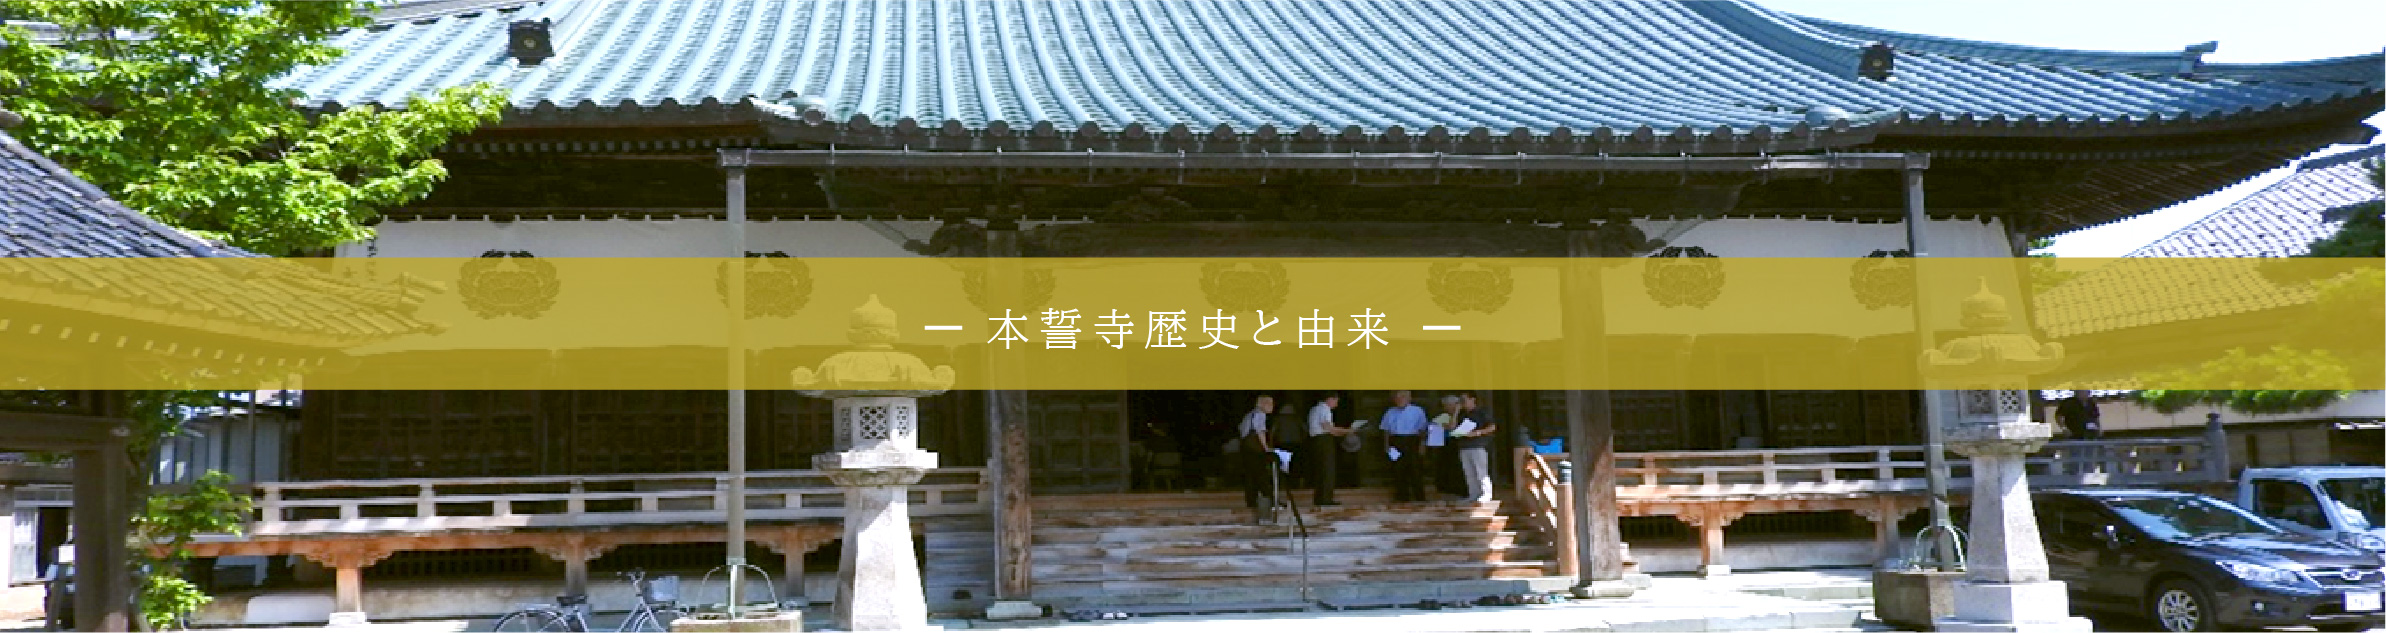 本誓寺の由来と歴史